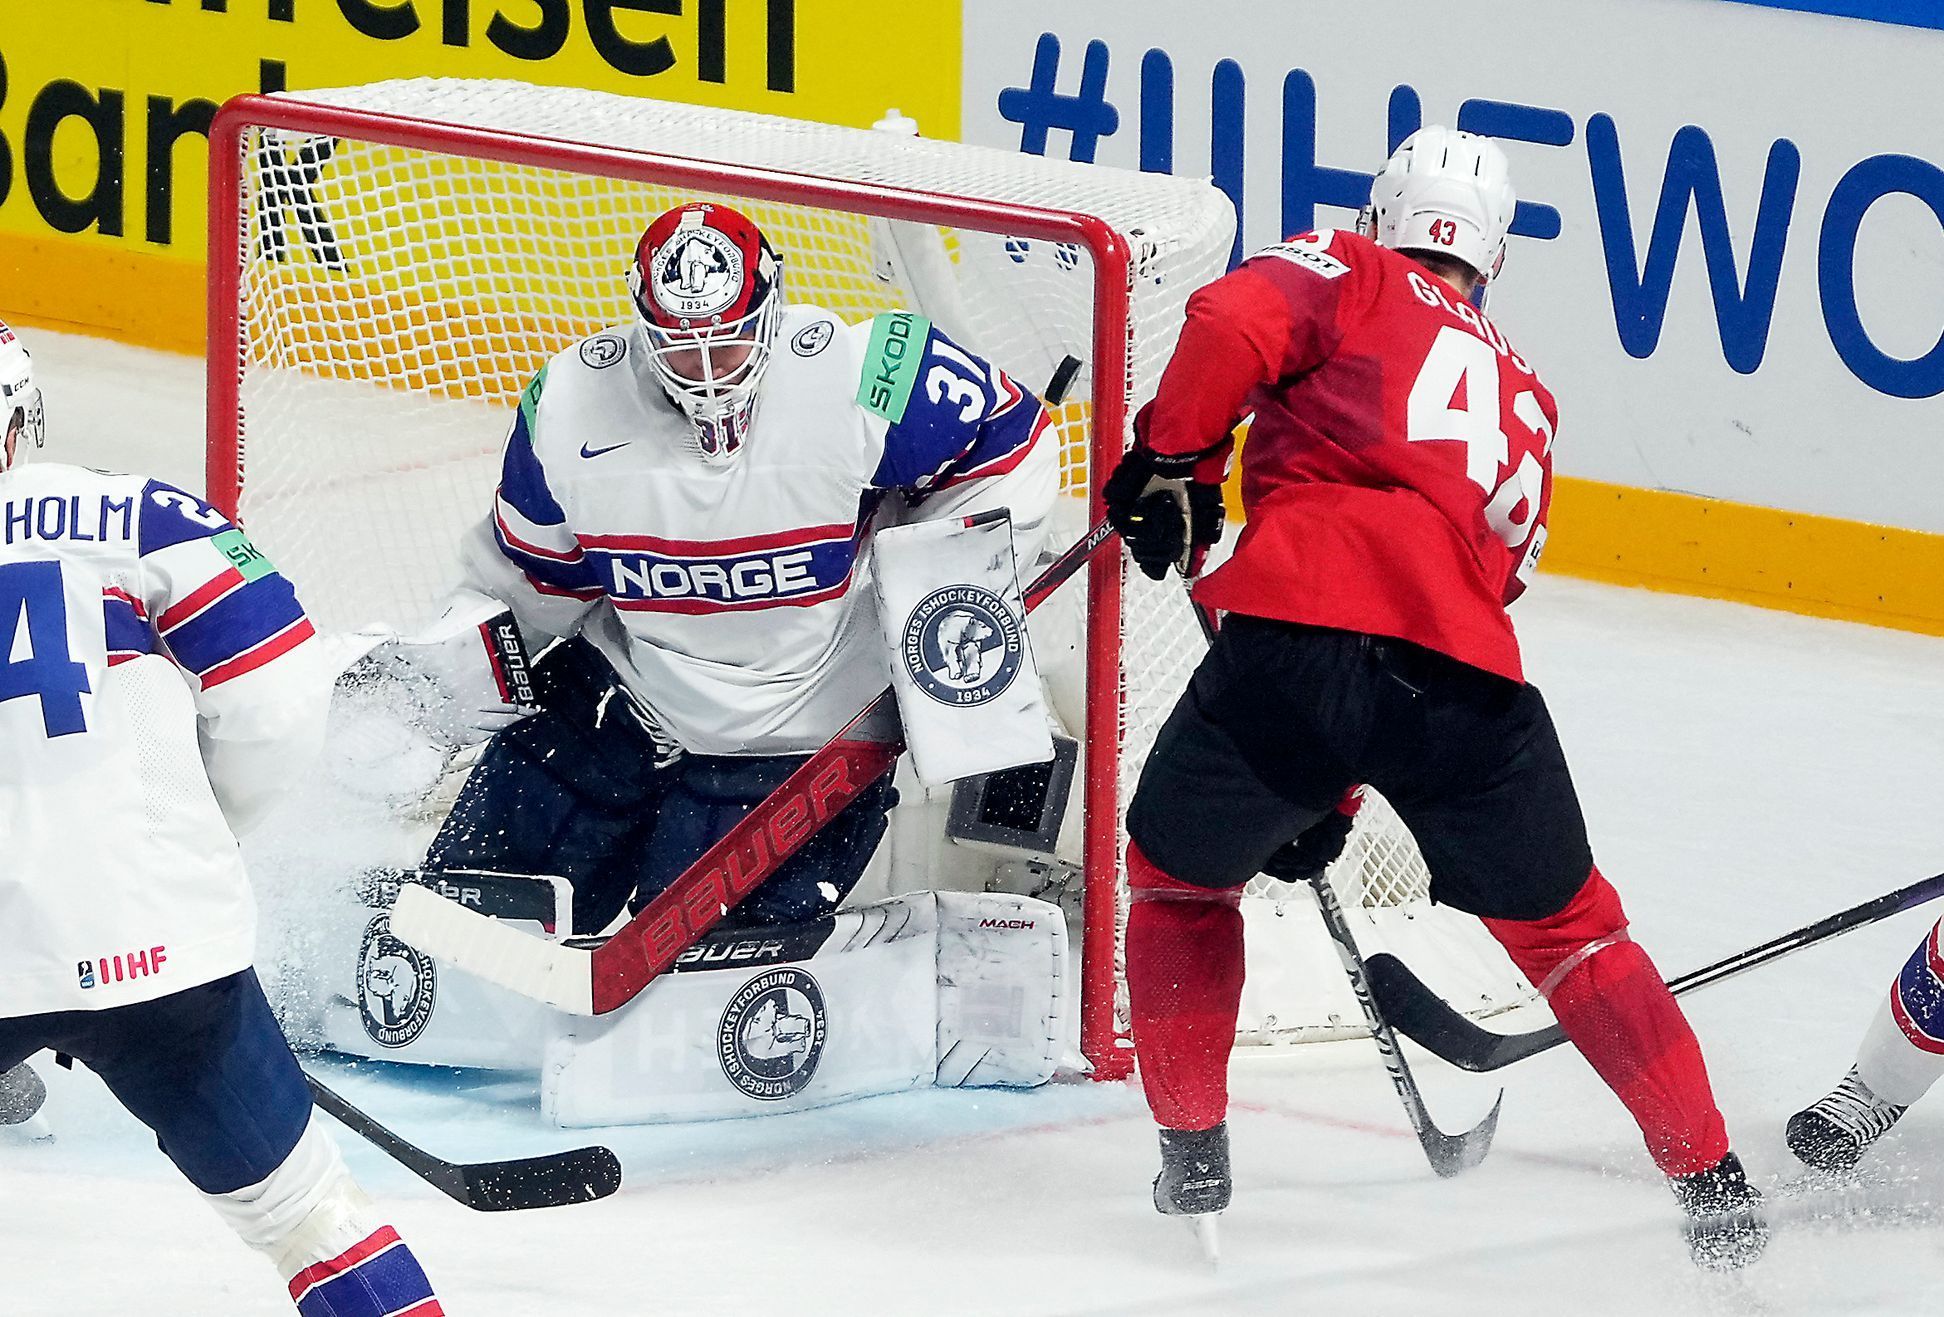 Andrea Glauser dává gól v utkání Švýcarsko - Norsko na MS 2023